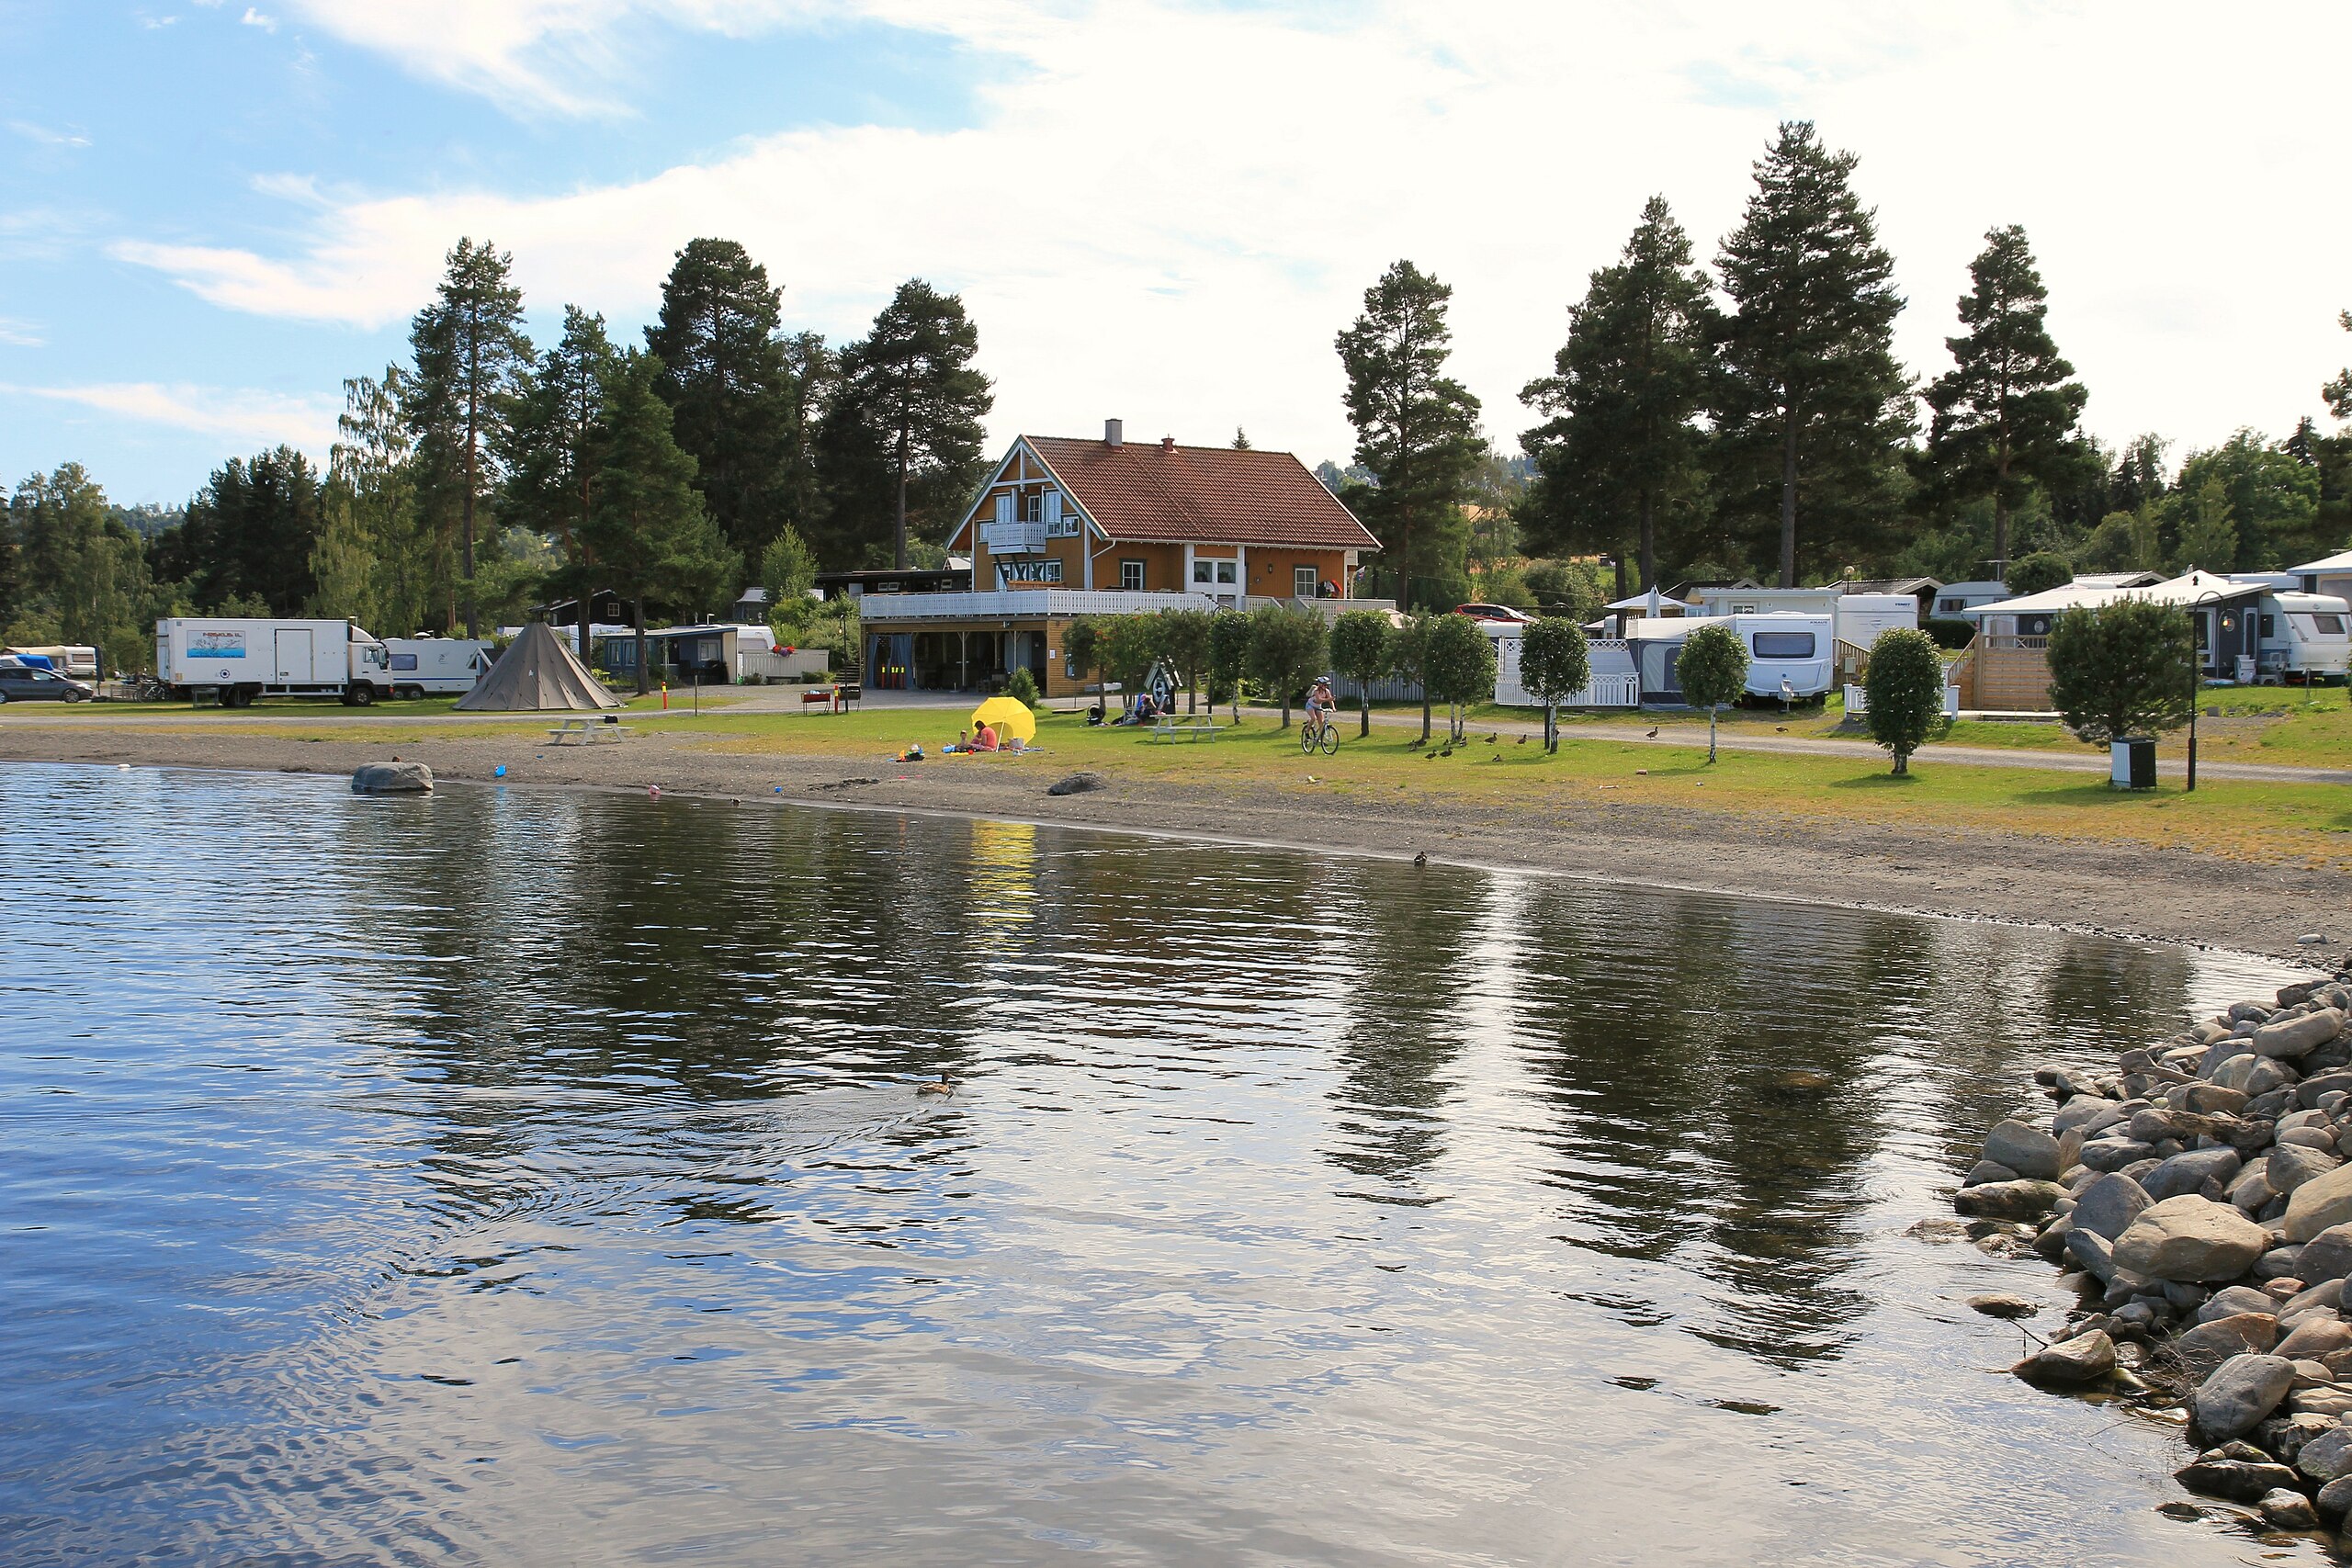 File:Hekshus camping på Kapp på Toten, Oppland, Norway 2.JPG - Wikimedia  Commons